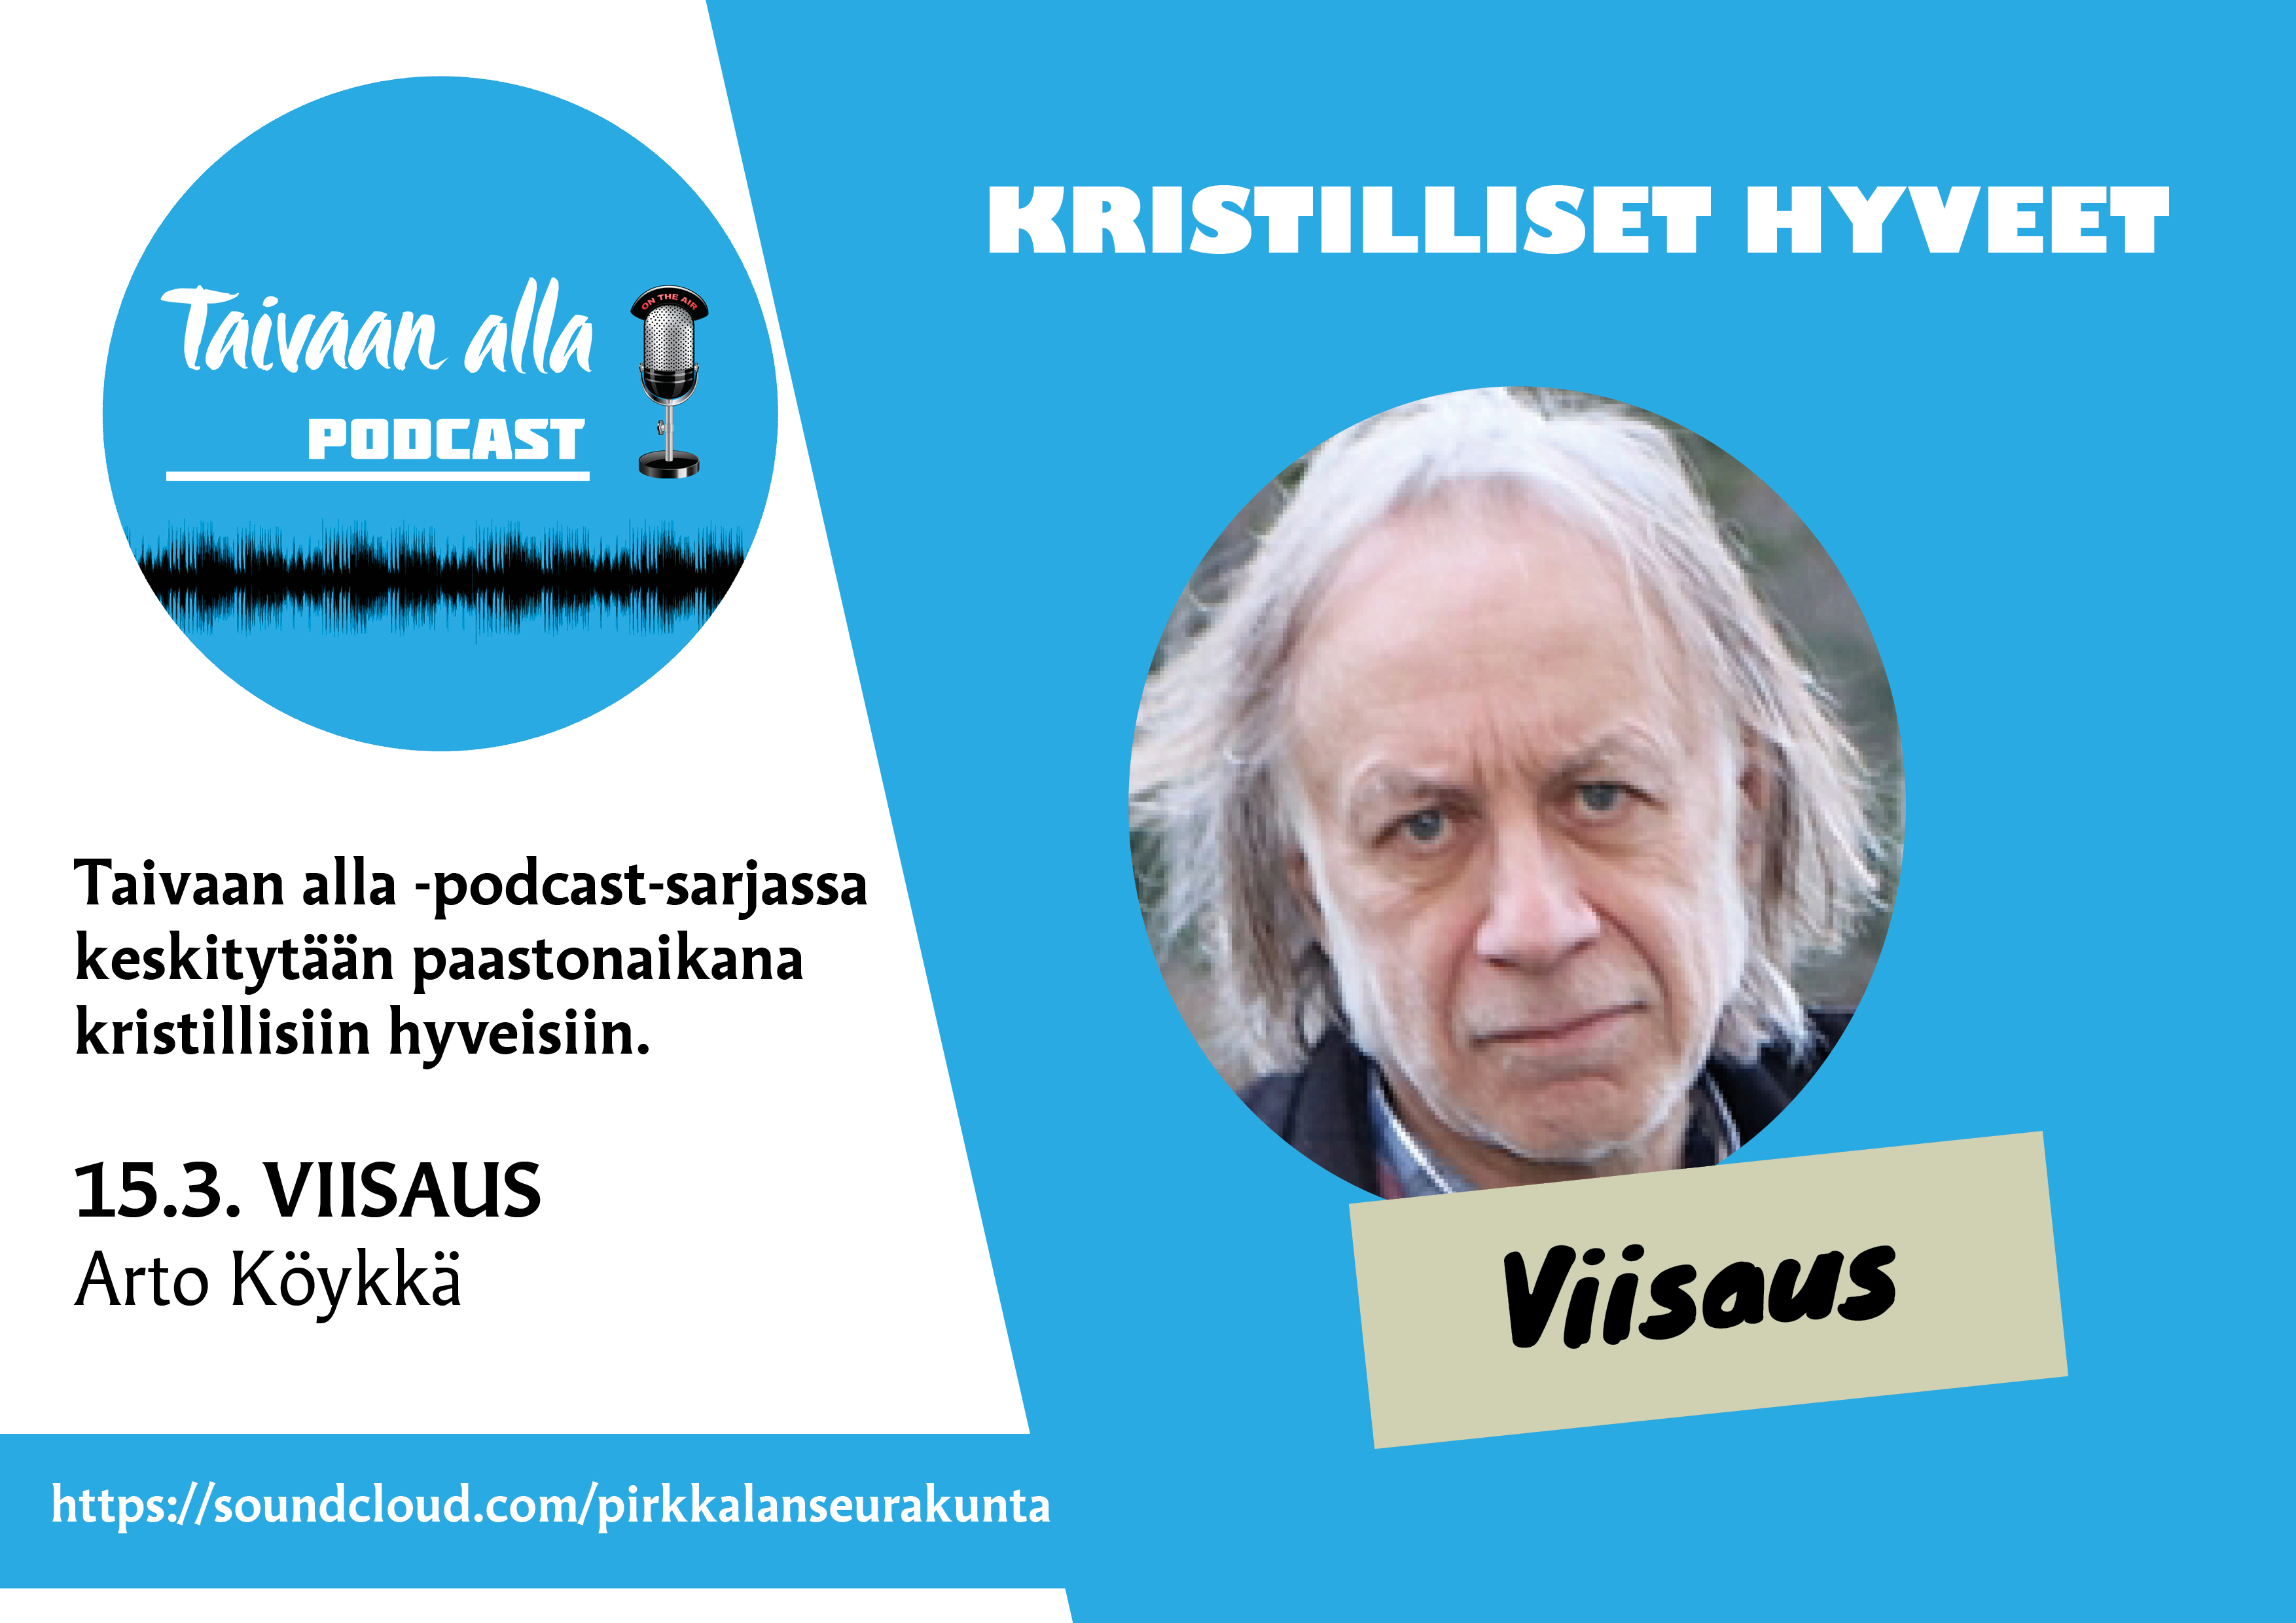 Pastori Arto Köykkä podcastin mainoksessa.